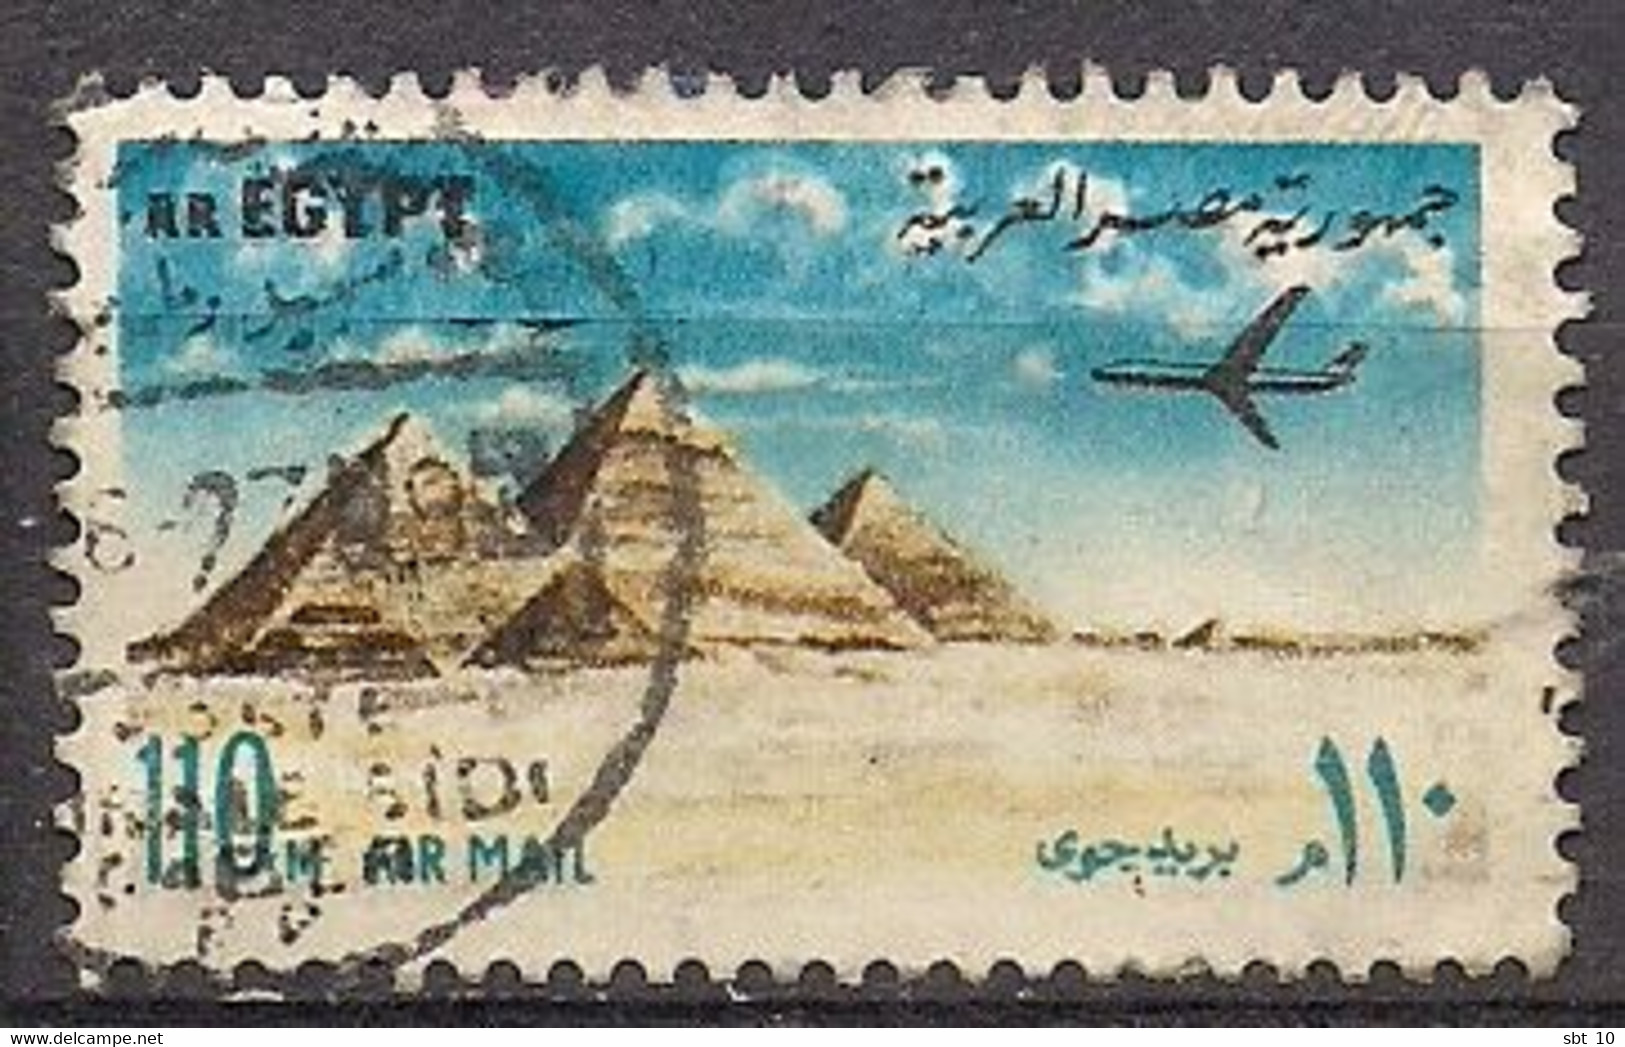 Egypt 1972 - Pyramids At Giza Scott#C148 - Used - Gebruikt